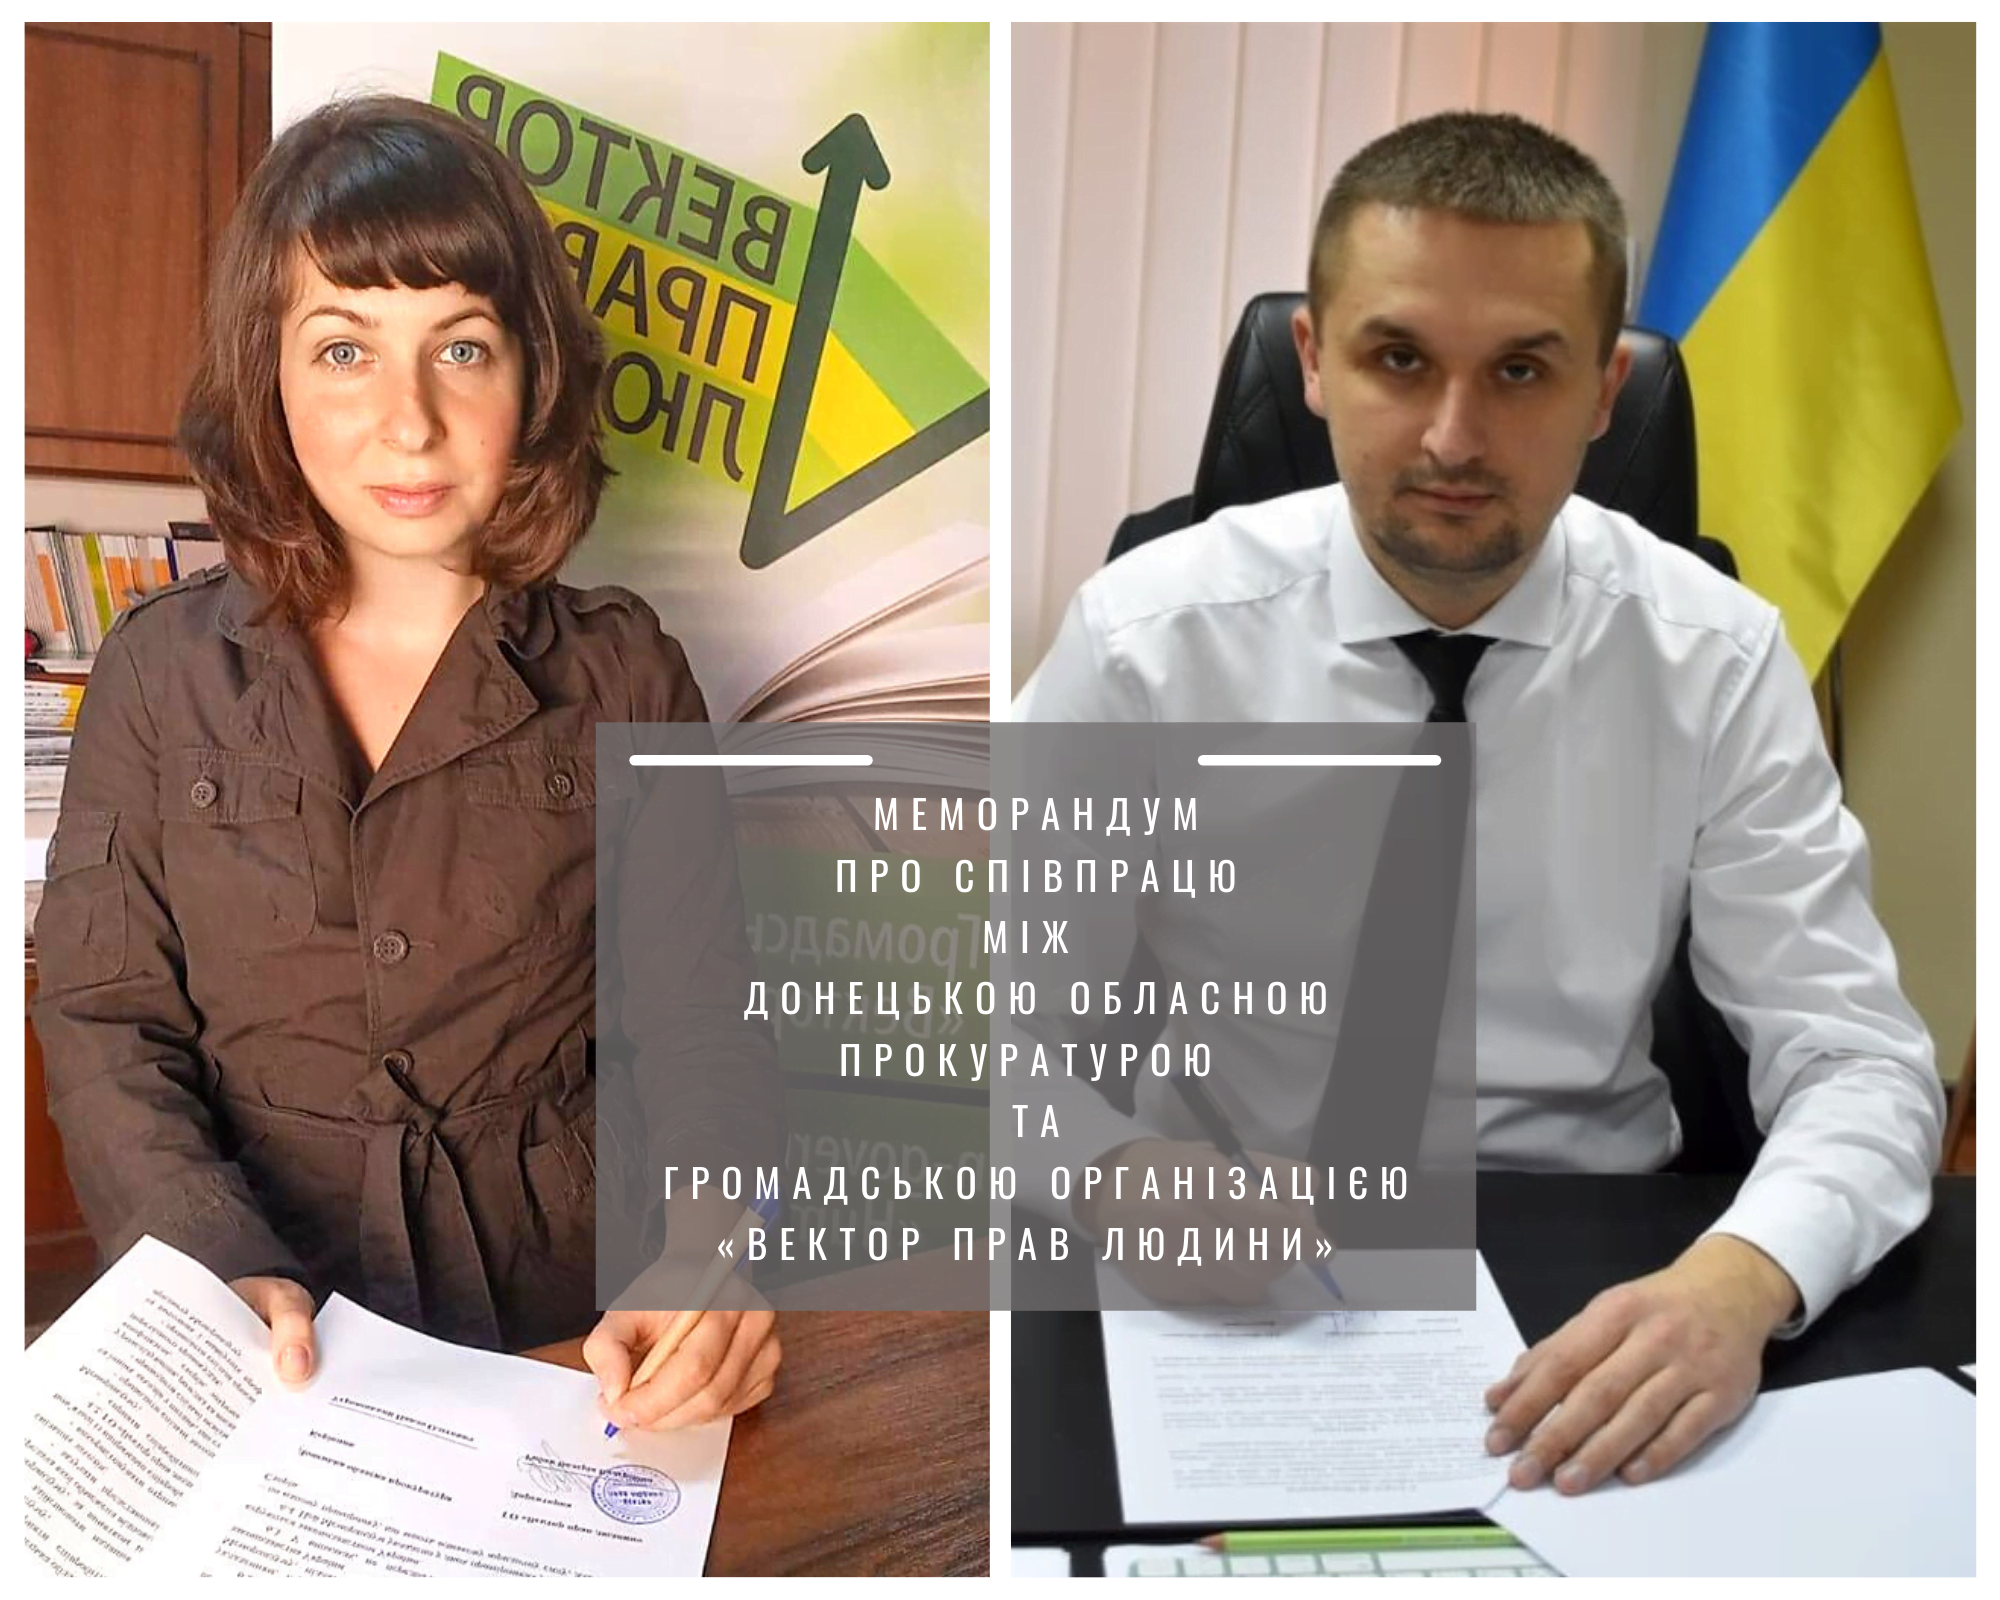 Підписано Меморандум про співпрацю між Донецькою обласною прокуратурою та громадською організацією «Вектор прав людини»